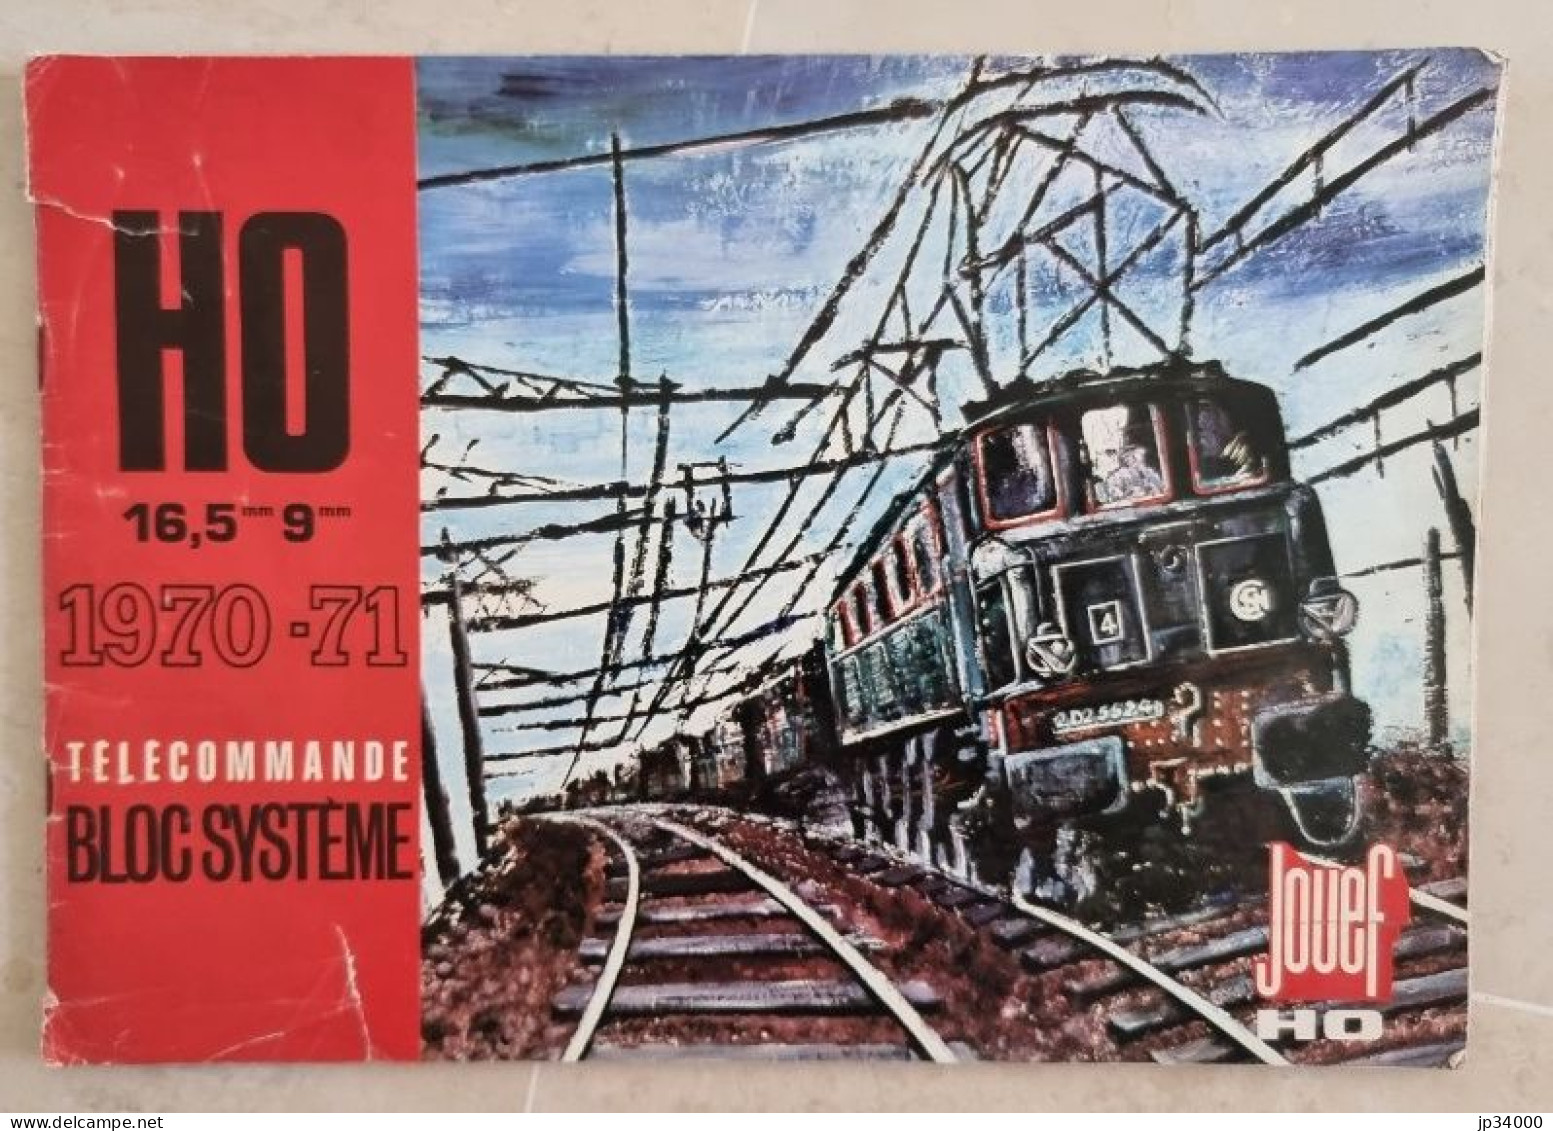 TELECOMMANDE BLOC SYSTEME (Jouef HO) Complet 40 Pages, 1970-71 (Trains électriques) - Literatur & DVD